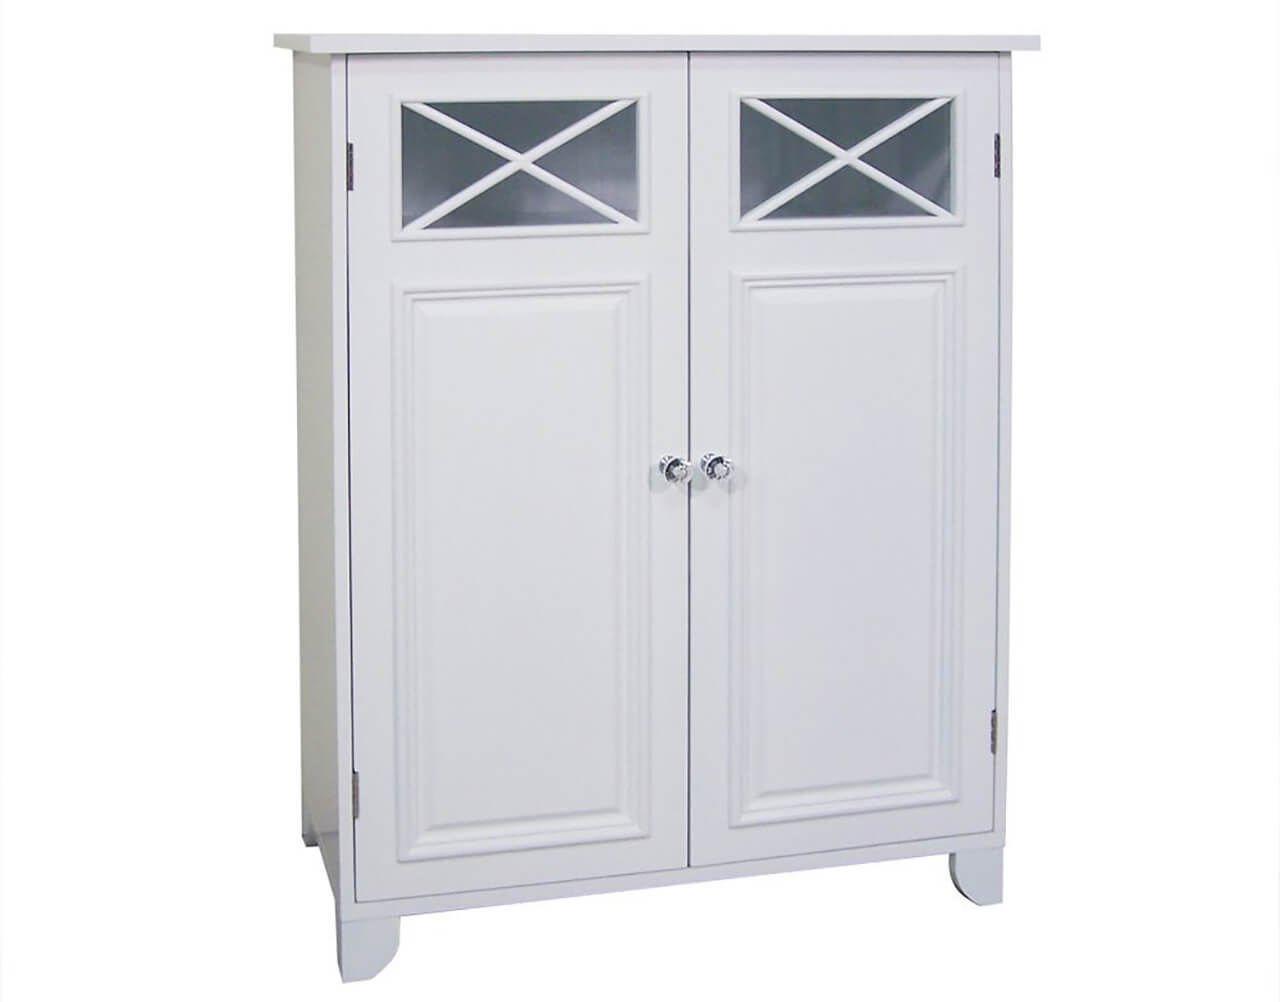 B Suitable for Living Room Bedroom Kamorry Simple & Modern Bathroom Cupboard Floor Standing Wood Cabinet Unit Storage Waterproof in Balcony,White Storage Cabinet